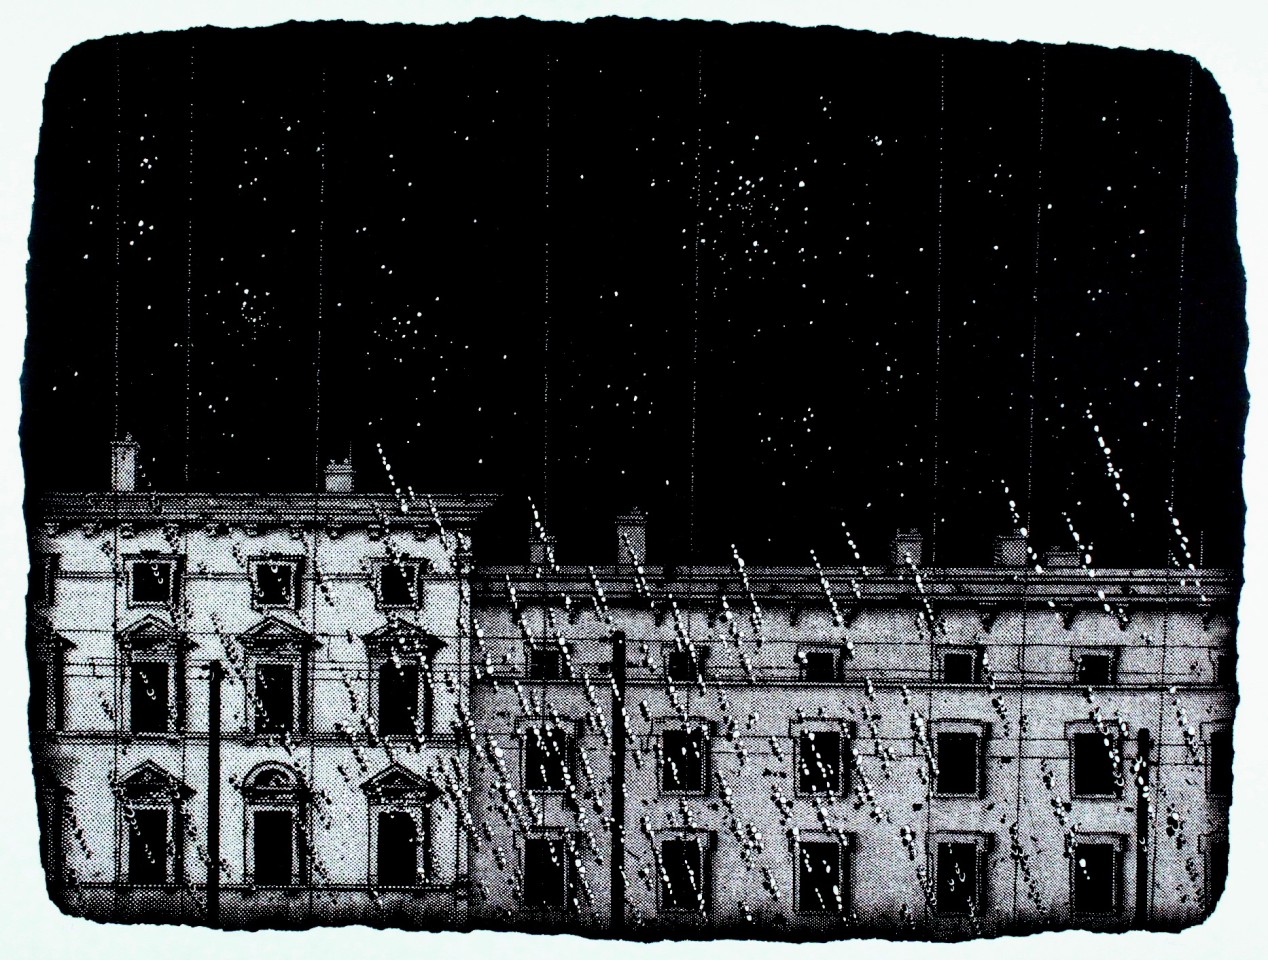 Nicolas Poignon, Nuit lumineuse, 2014